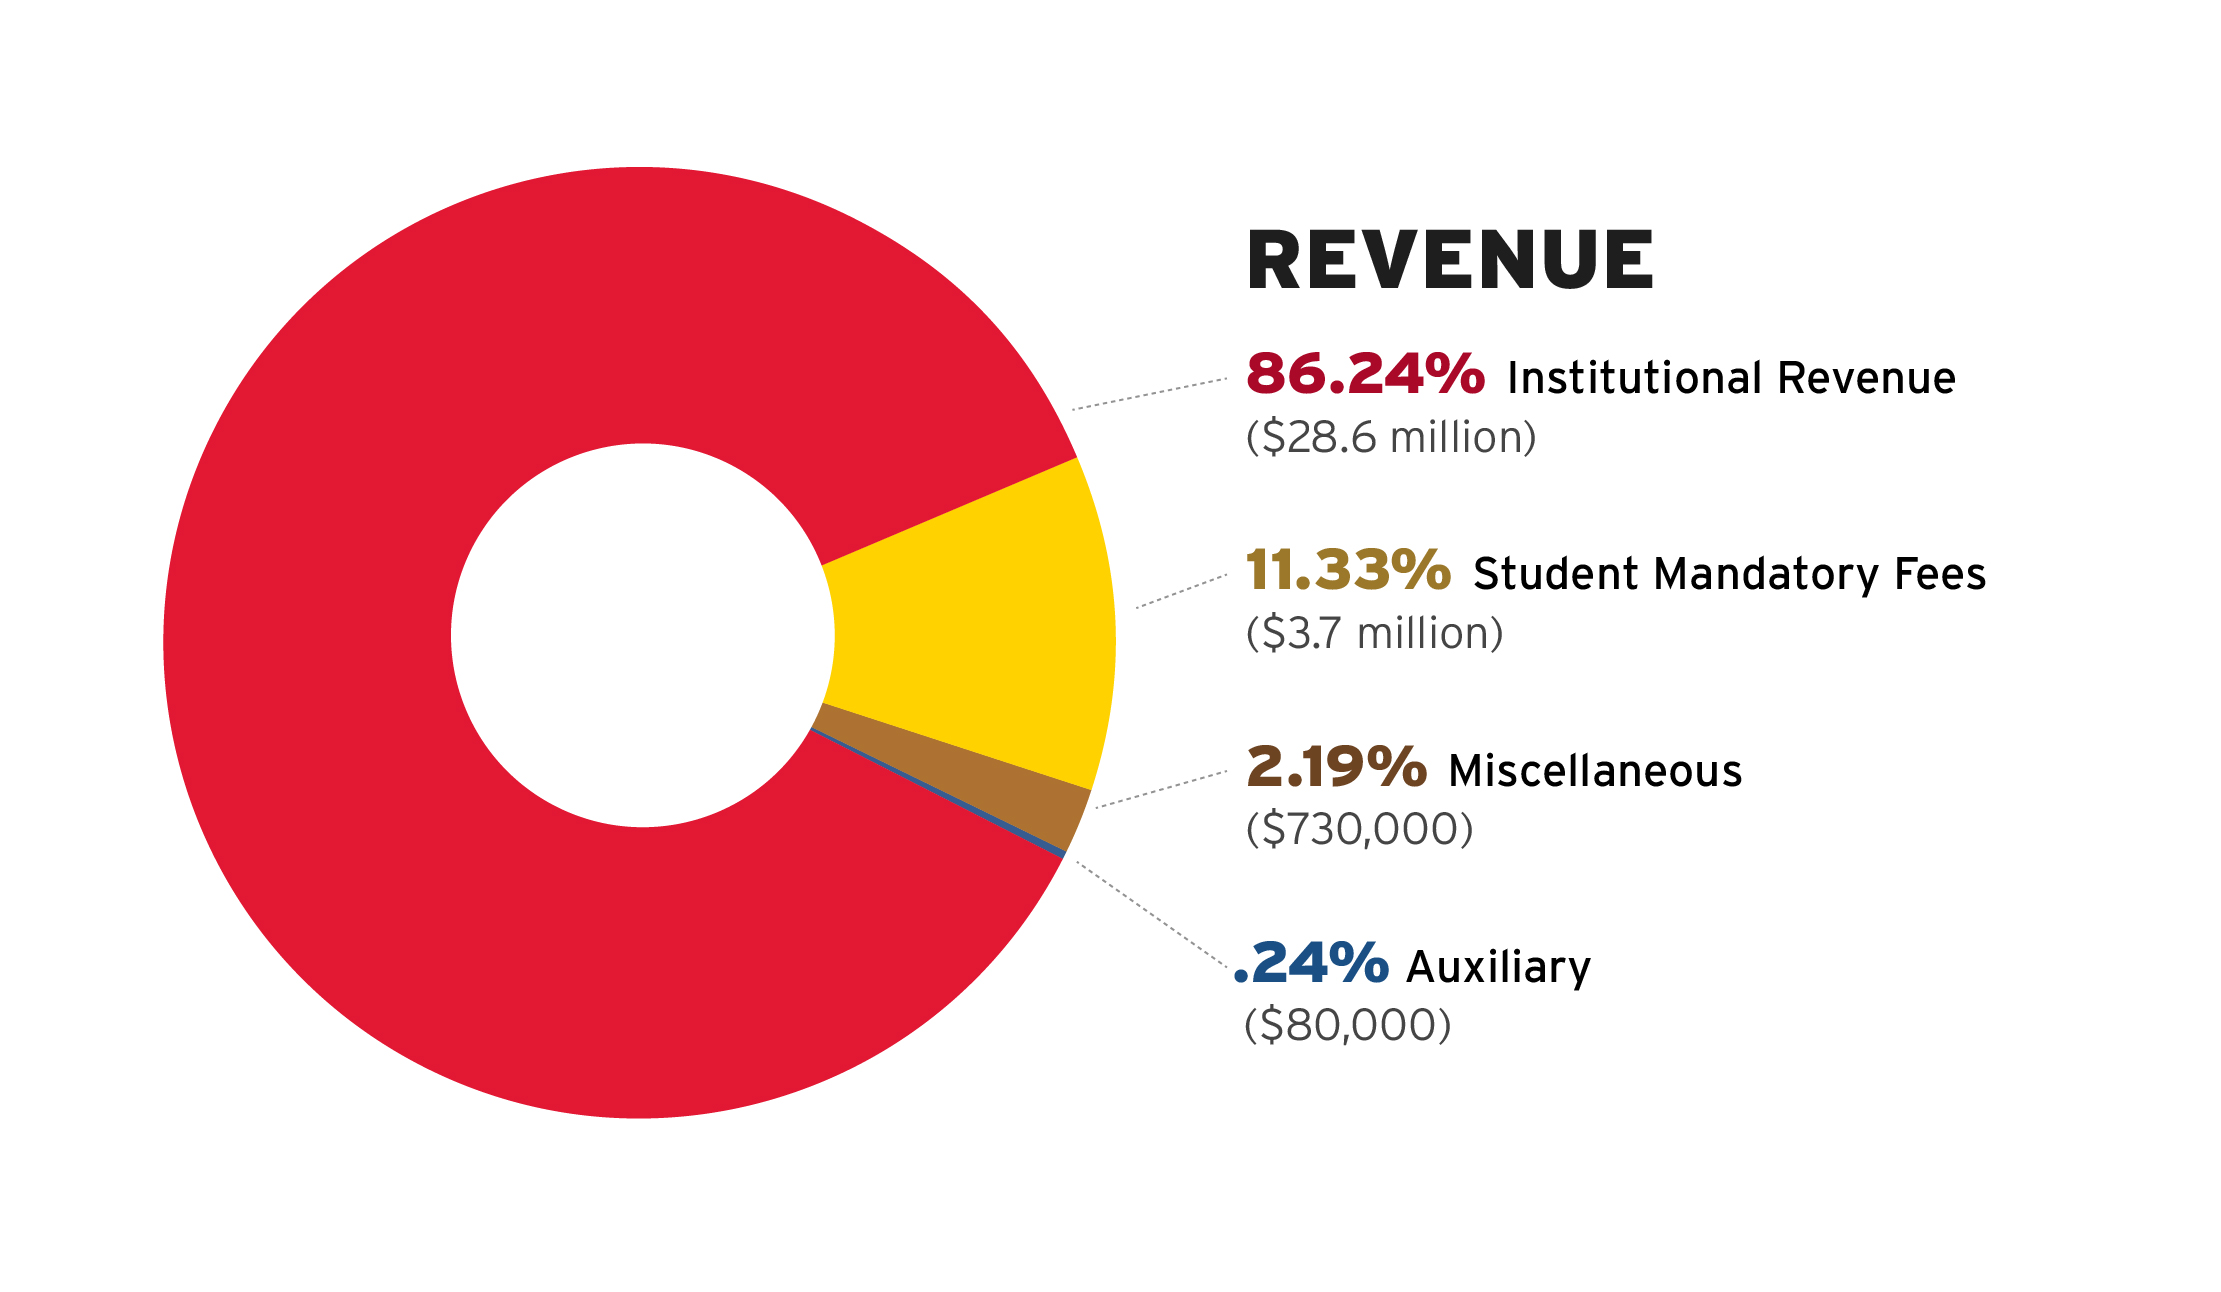 Revenue pie chart. Information written out below.